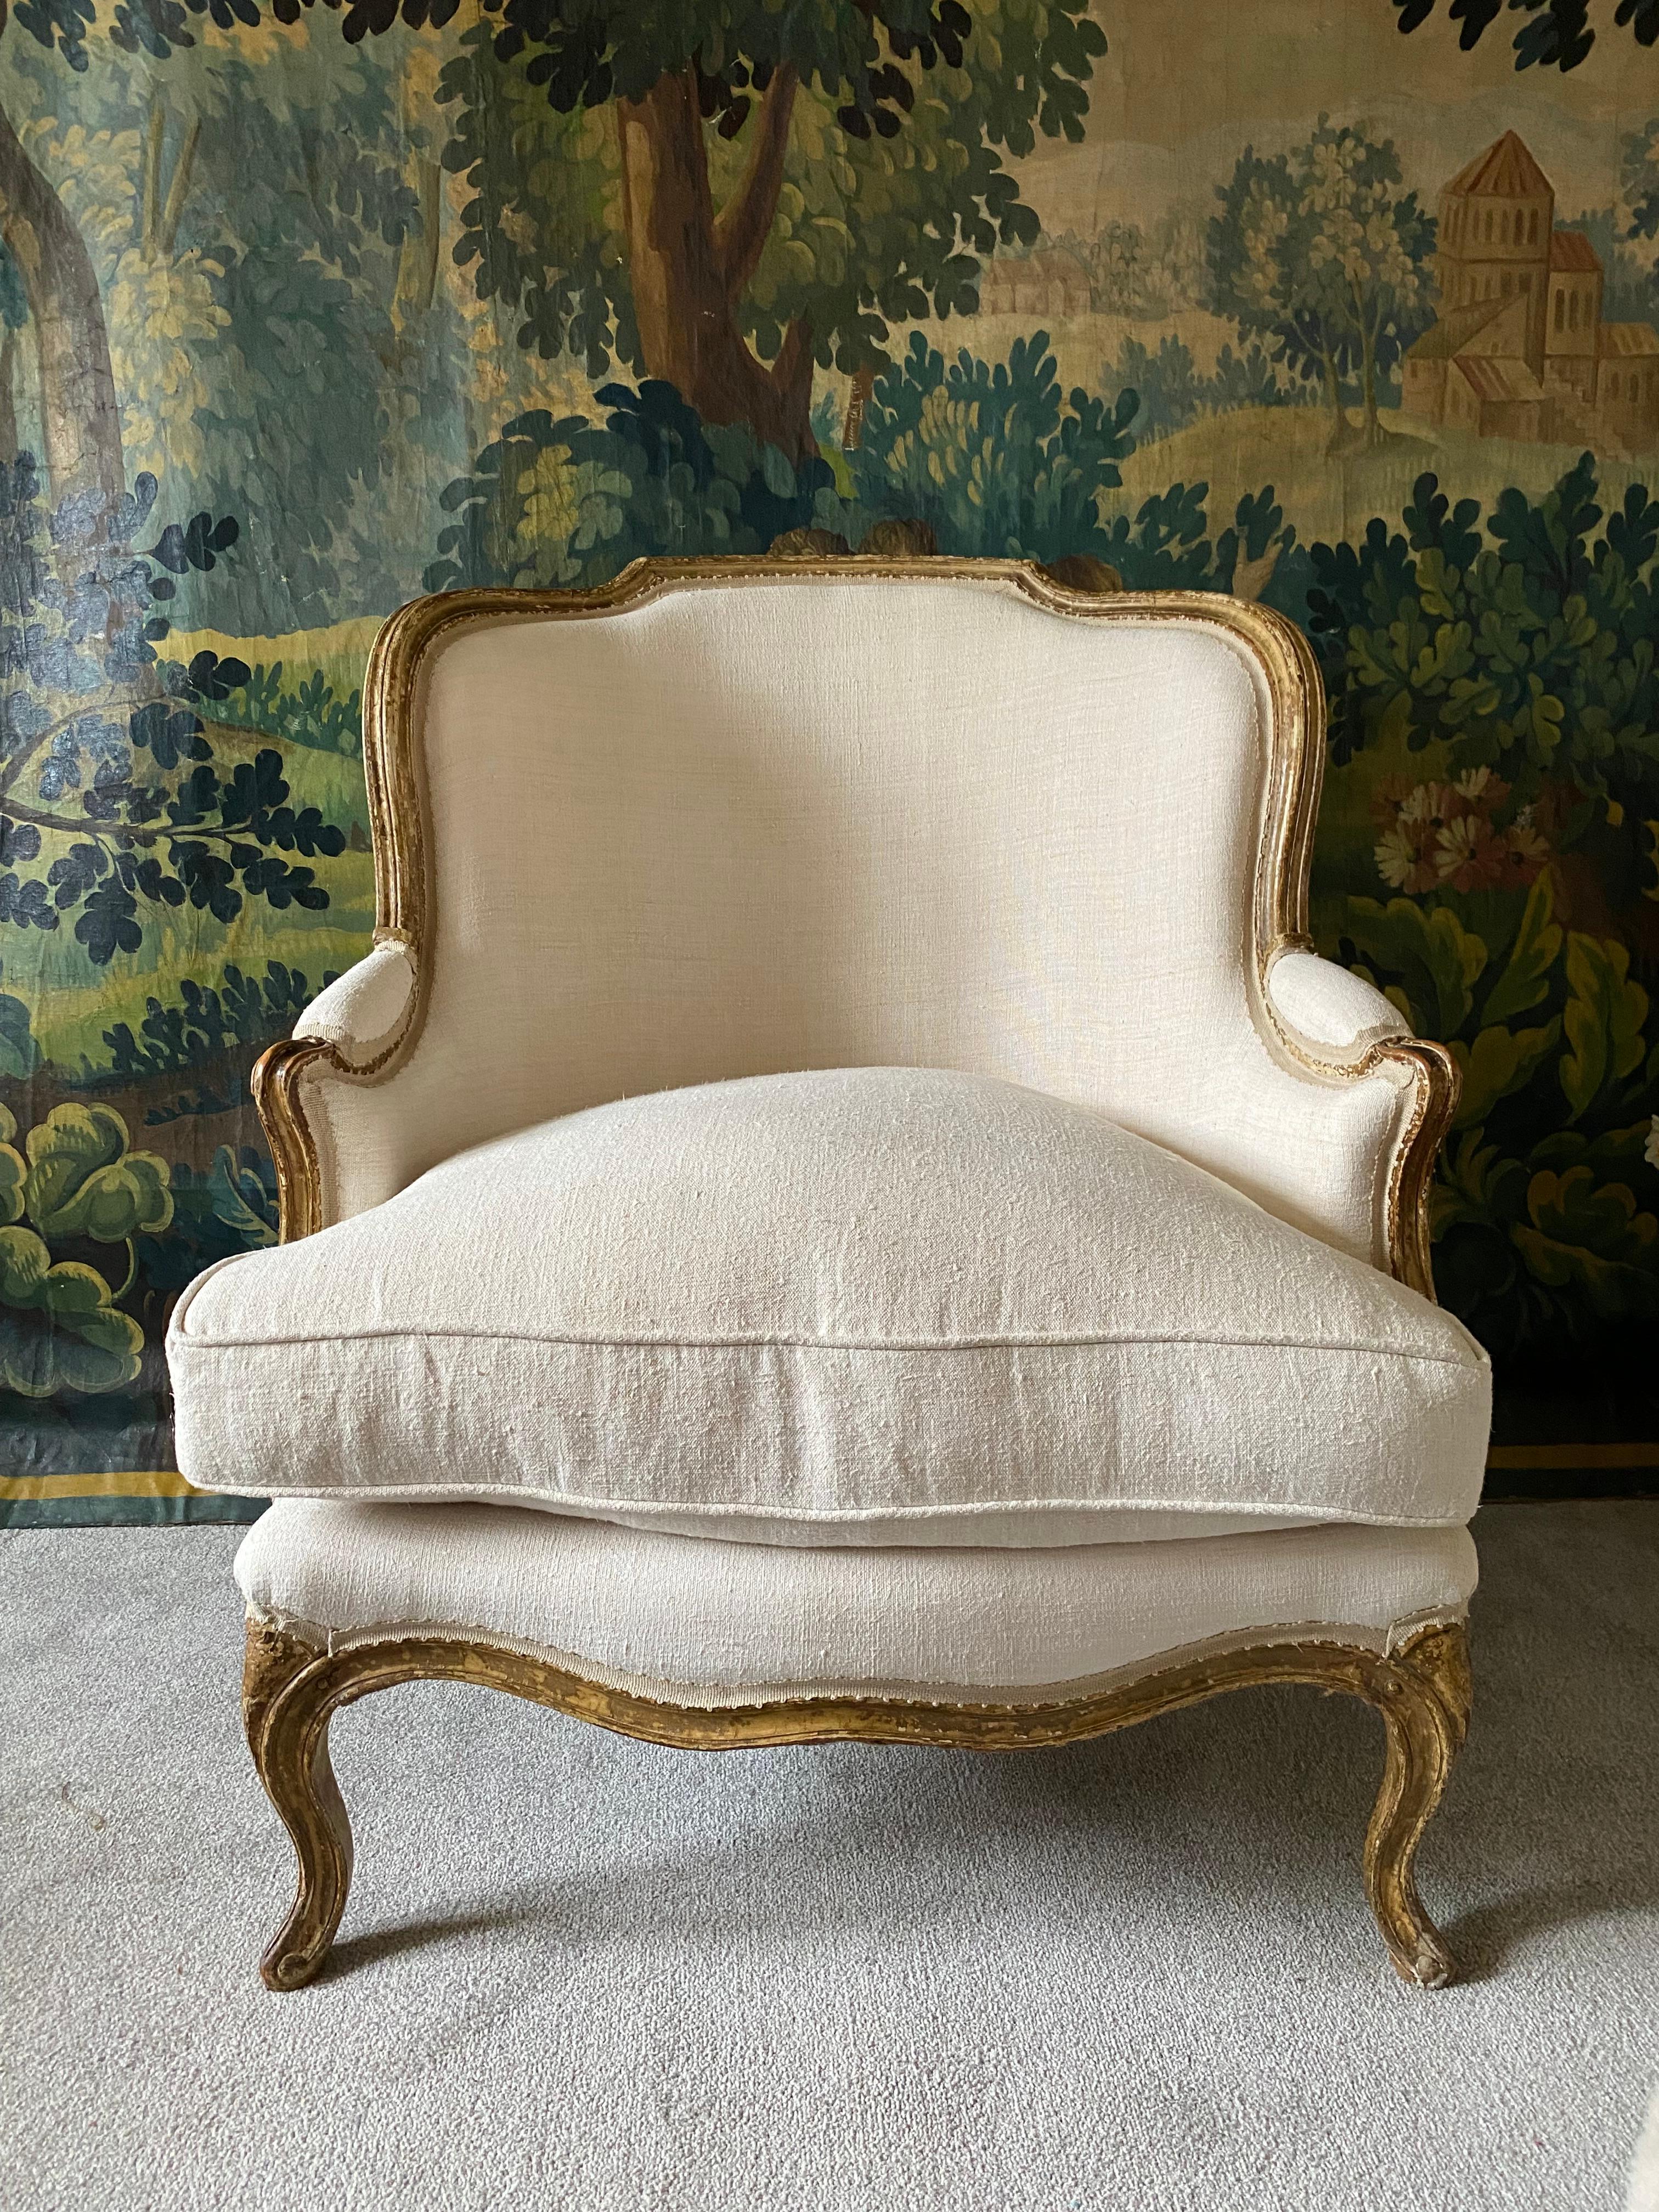 Ein außergewöhnlicher, hochwertiger französischer Sessel mit vergoldetem Gestell und ausgezeichneten Proportionen - größer als der Durchschnitt, mit einem dicken Federkissen und äußerst bequem.  Das Gestell ist so zart vergoldet, dass es an